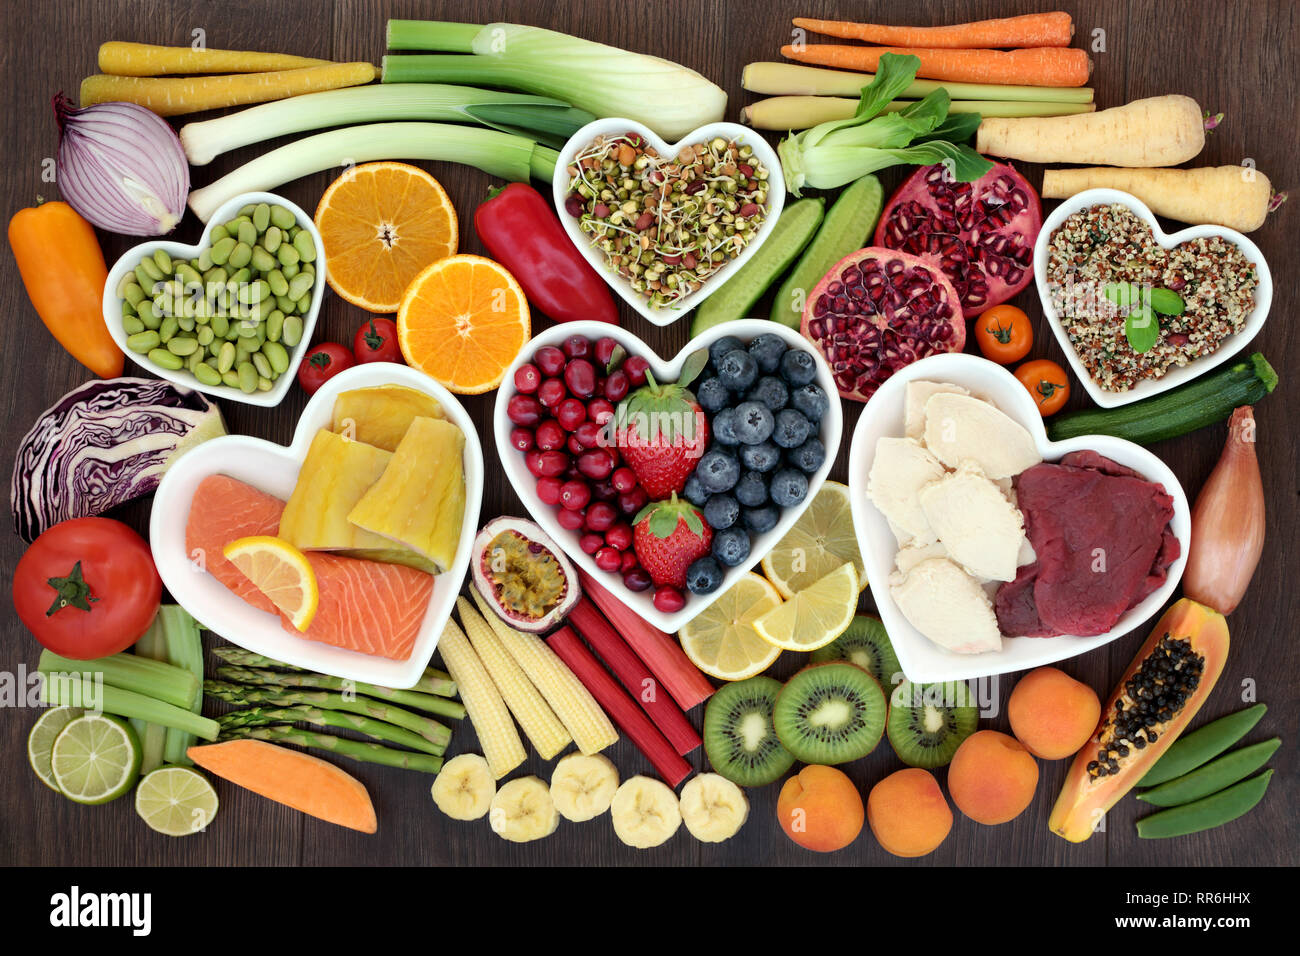 La perdita di peso health food concept con verdure fresche, frutta, cereali e sementi, insalate, carne e pesce con alimenti ricchi di fibre dietetiche e antiossidanti. Foto Stock